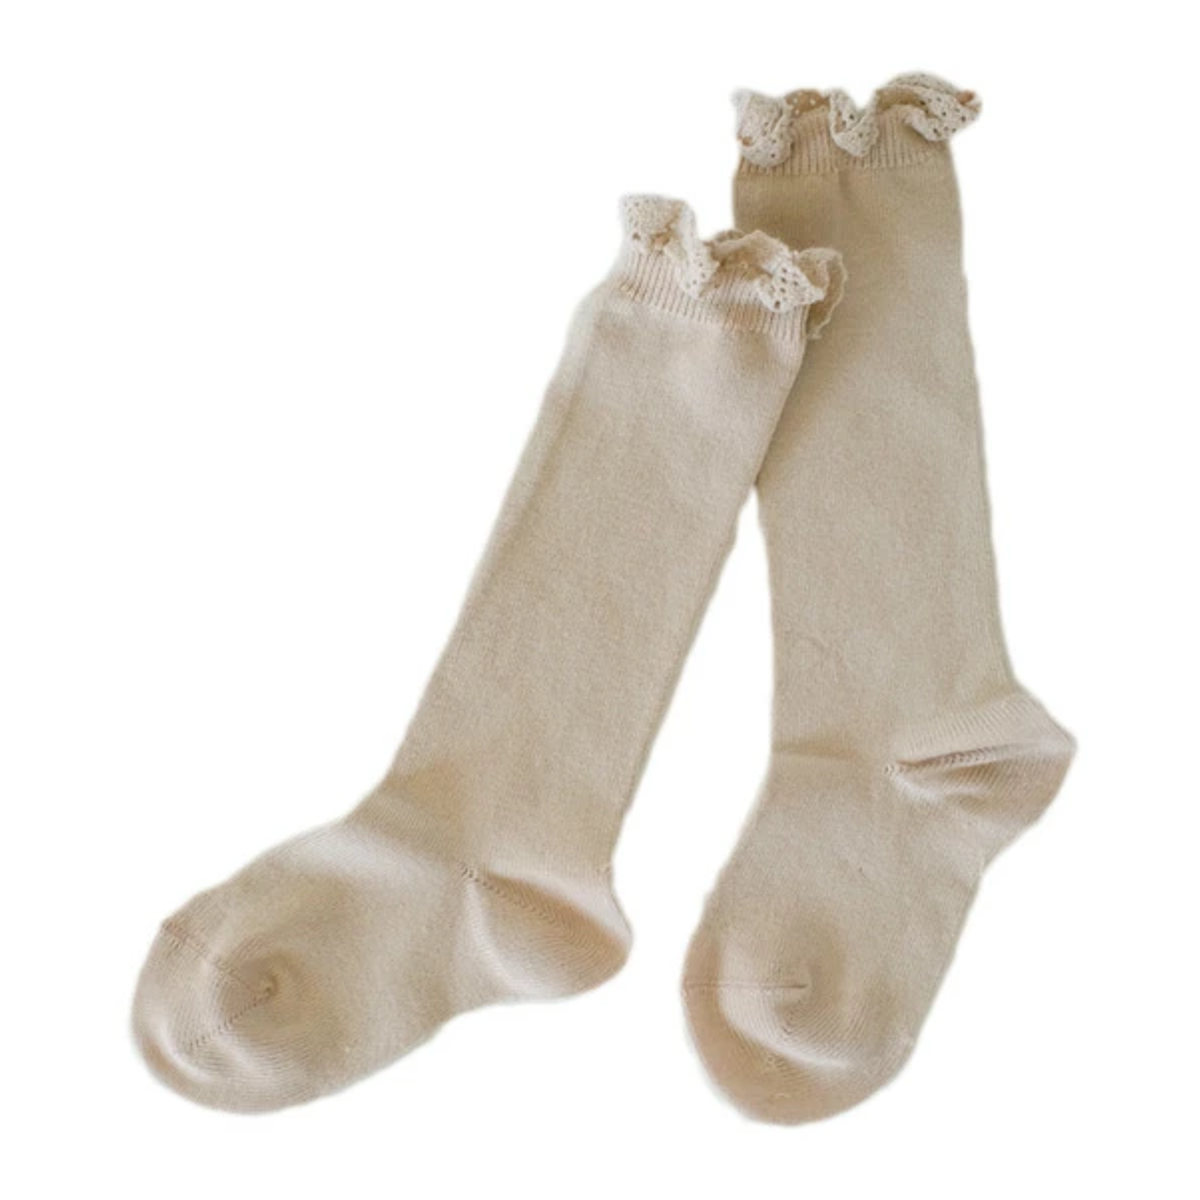 靴下 condor 子供用 7〜8歳 Knee socks with lace edging cuf...